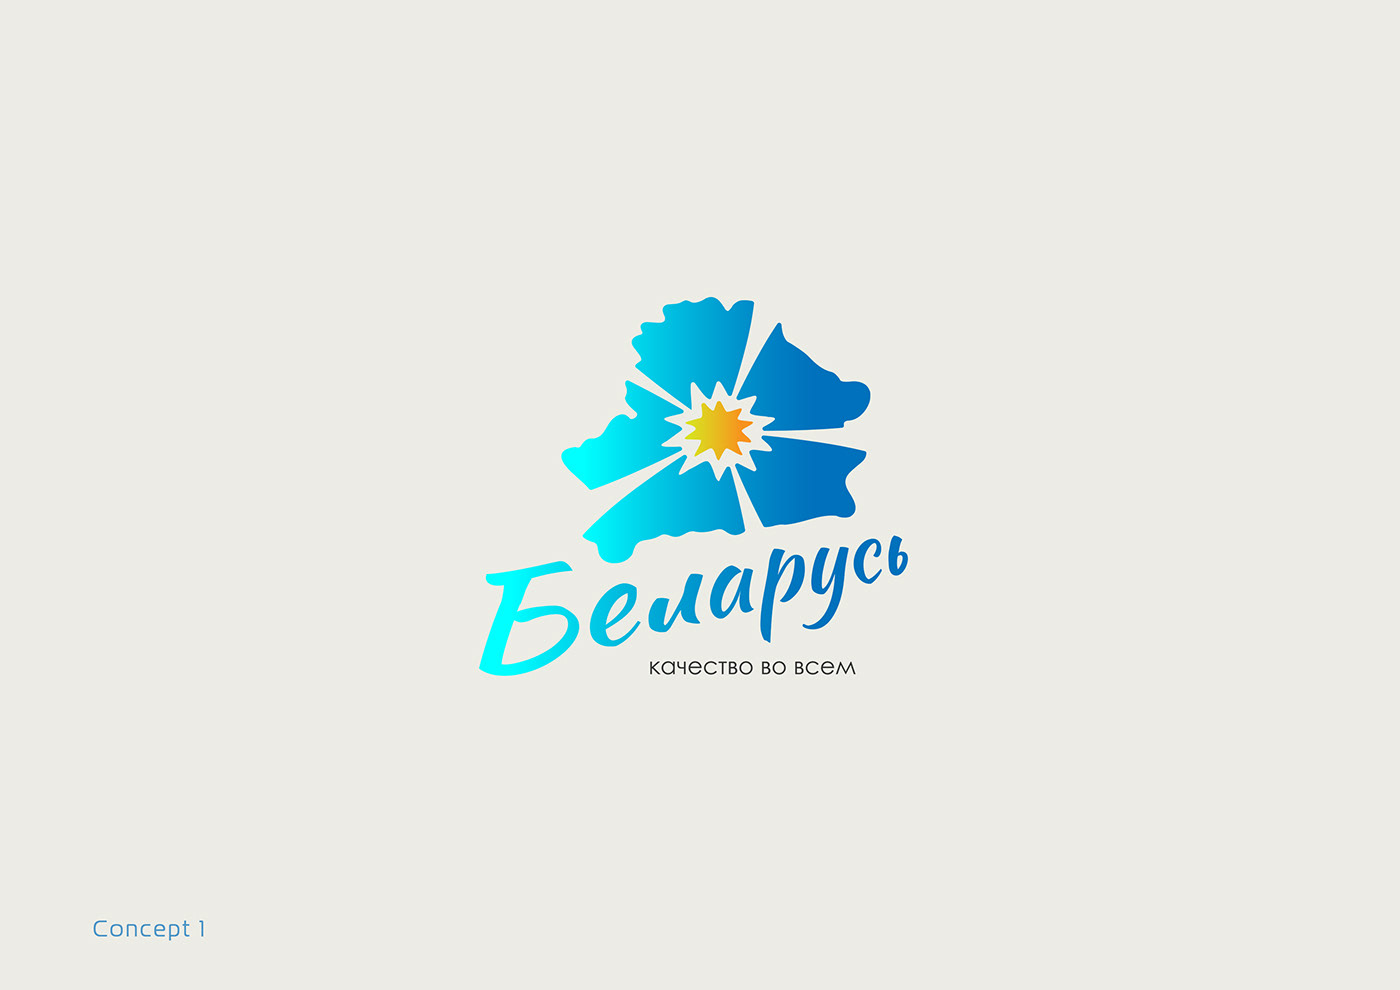 Belarusian brand logo | Логотип бренда белорусской продукции